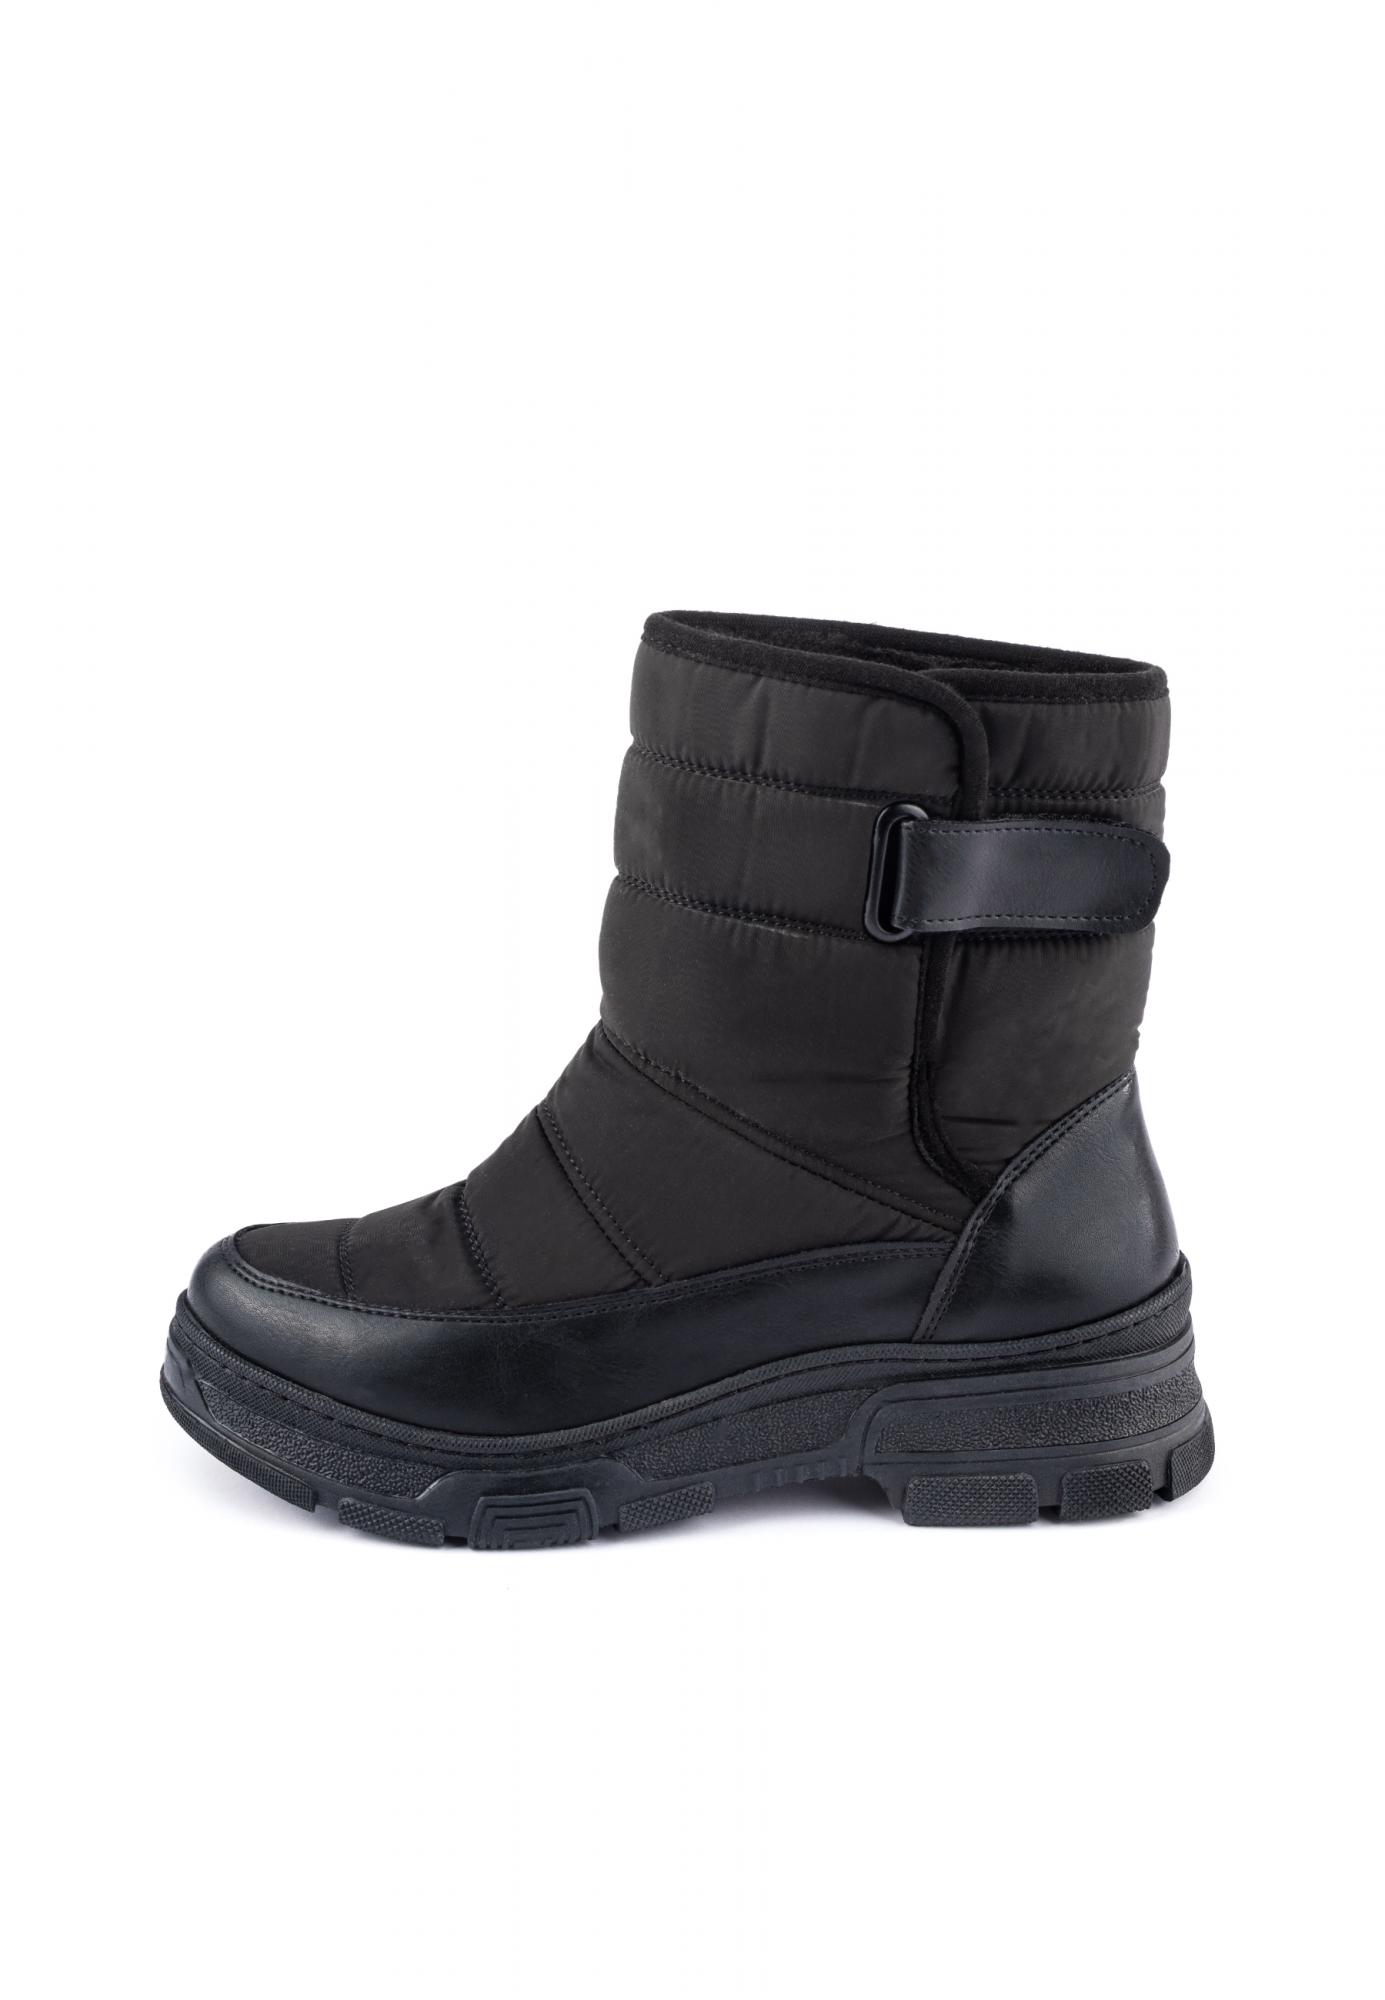 Warme Stiefel und Schuhe D430 - SCHWARZ